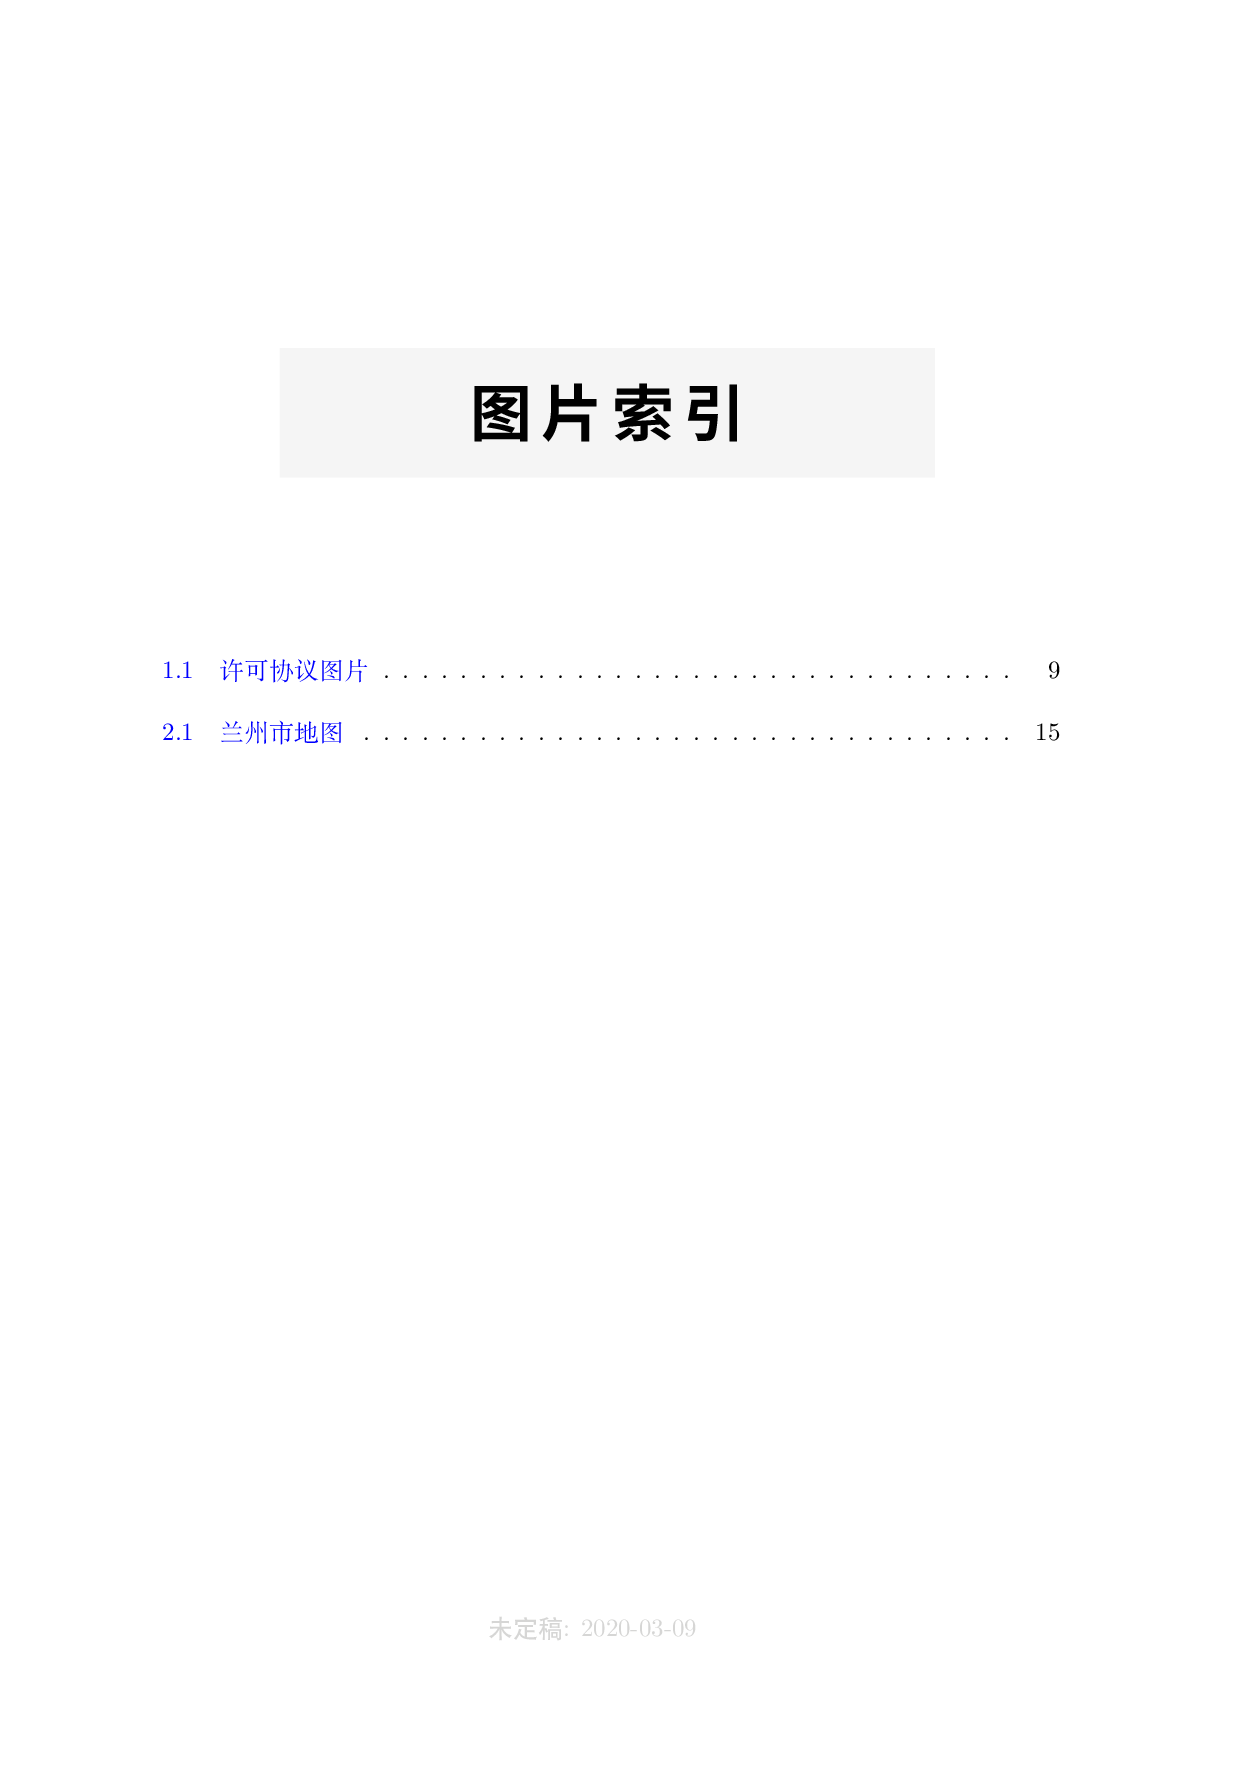 李文威老师代数学方法书籍模板 - 含完整 LaTeX 源码（高教出版）